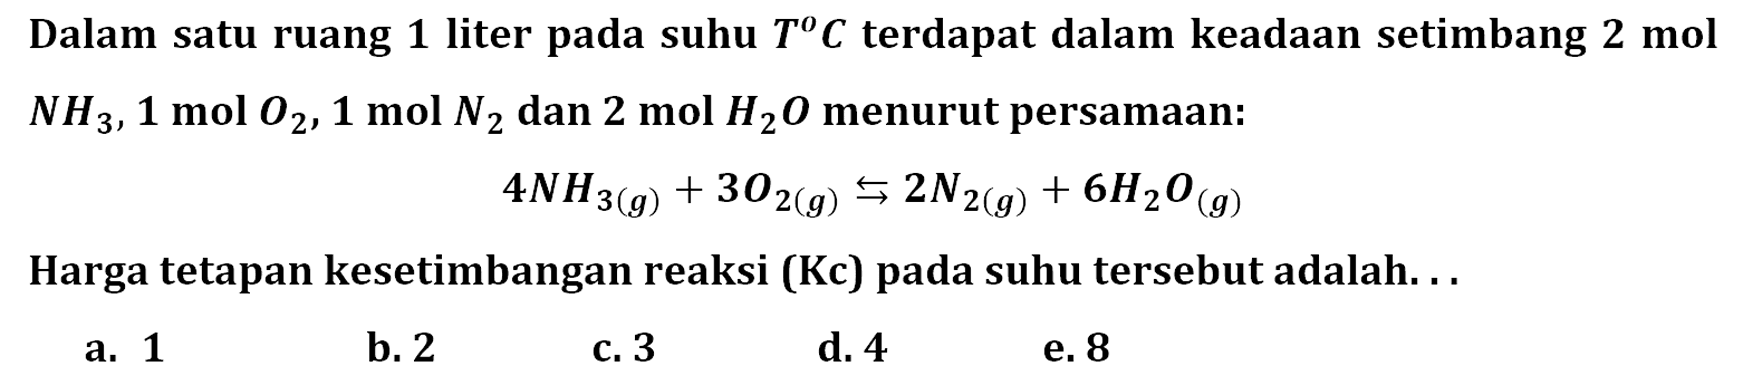 Dalam satu ruang 1 liter pada suhu T C terdapat dalam keadaan setimbang 2 mol NH3, 1 mol O2, 1 mol N2 dan 2 mol H2 O menurut persamaan:4 NH3(g)+3 O2(g) <=> 2 N2(g)+6 H2O(g)Harga tetapan kesetimbangan reaksi (Kc) pada suhu tersebut adalah. . .